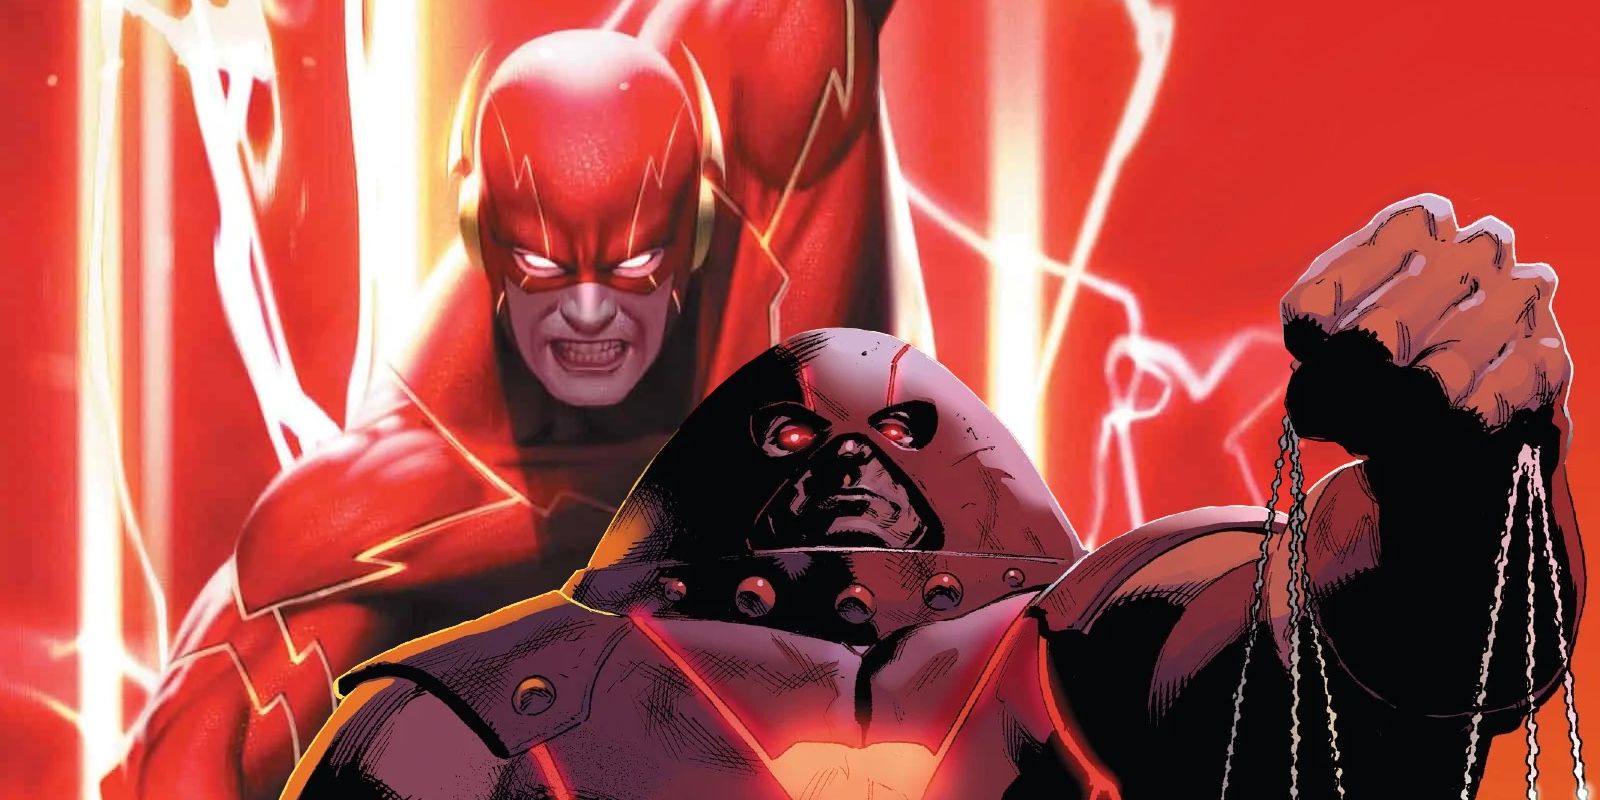 Marvel demuestra que Juggernaut sería impotente contra un superhéroe de DC